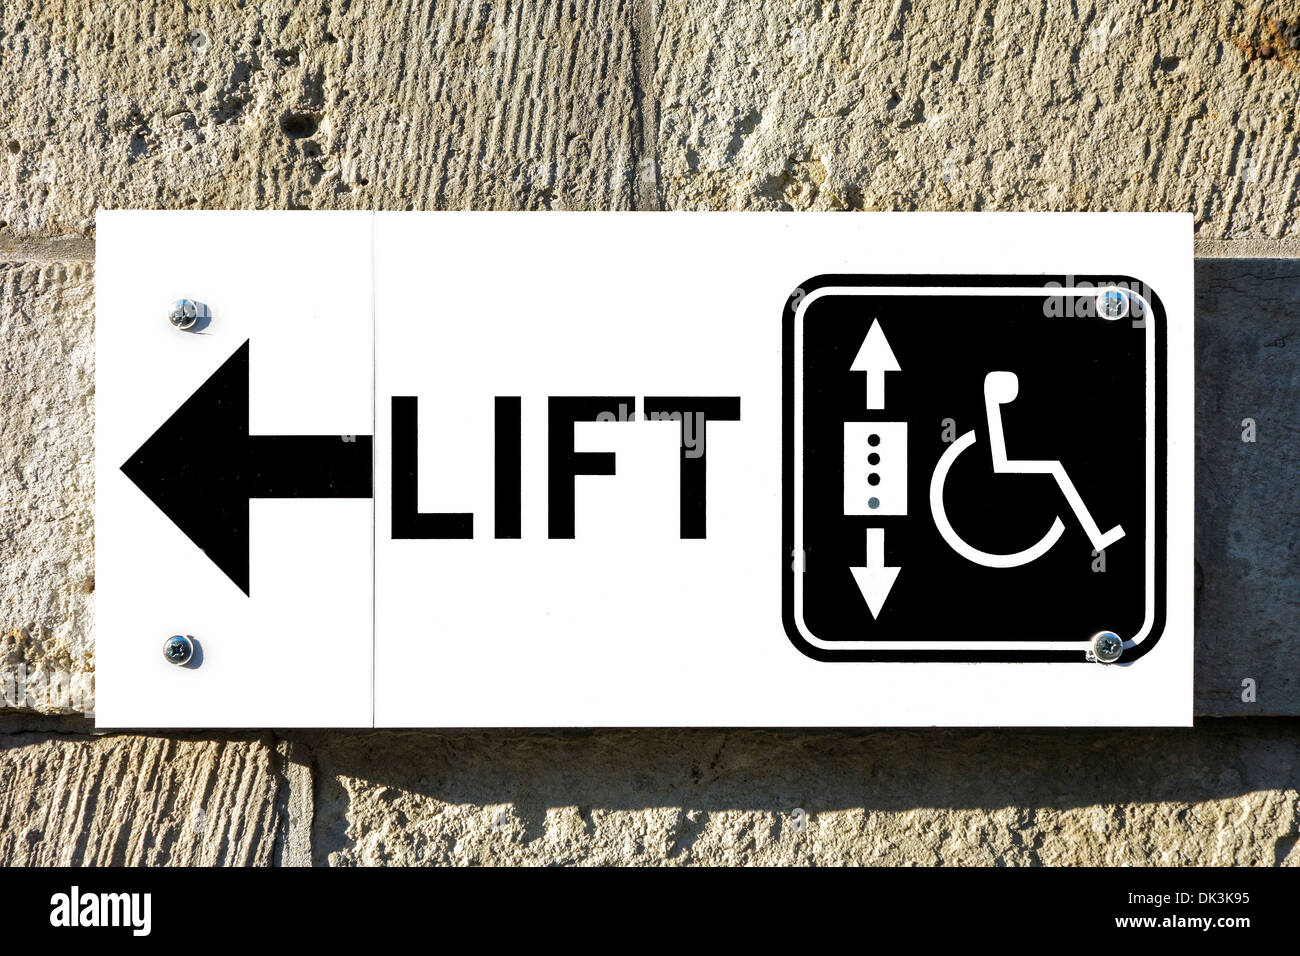 Signer avec la flèche indiquant la direction d'ascenseur / ascenseur pour les personnes en fauteuil roulant et les personnes handicapées à accéder à l'édifice, Banque D'Images